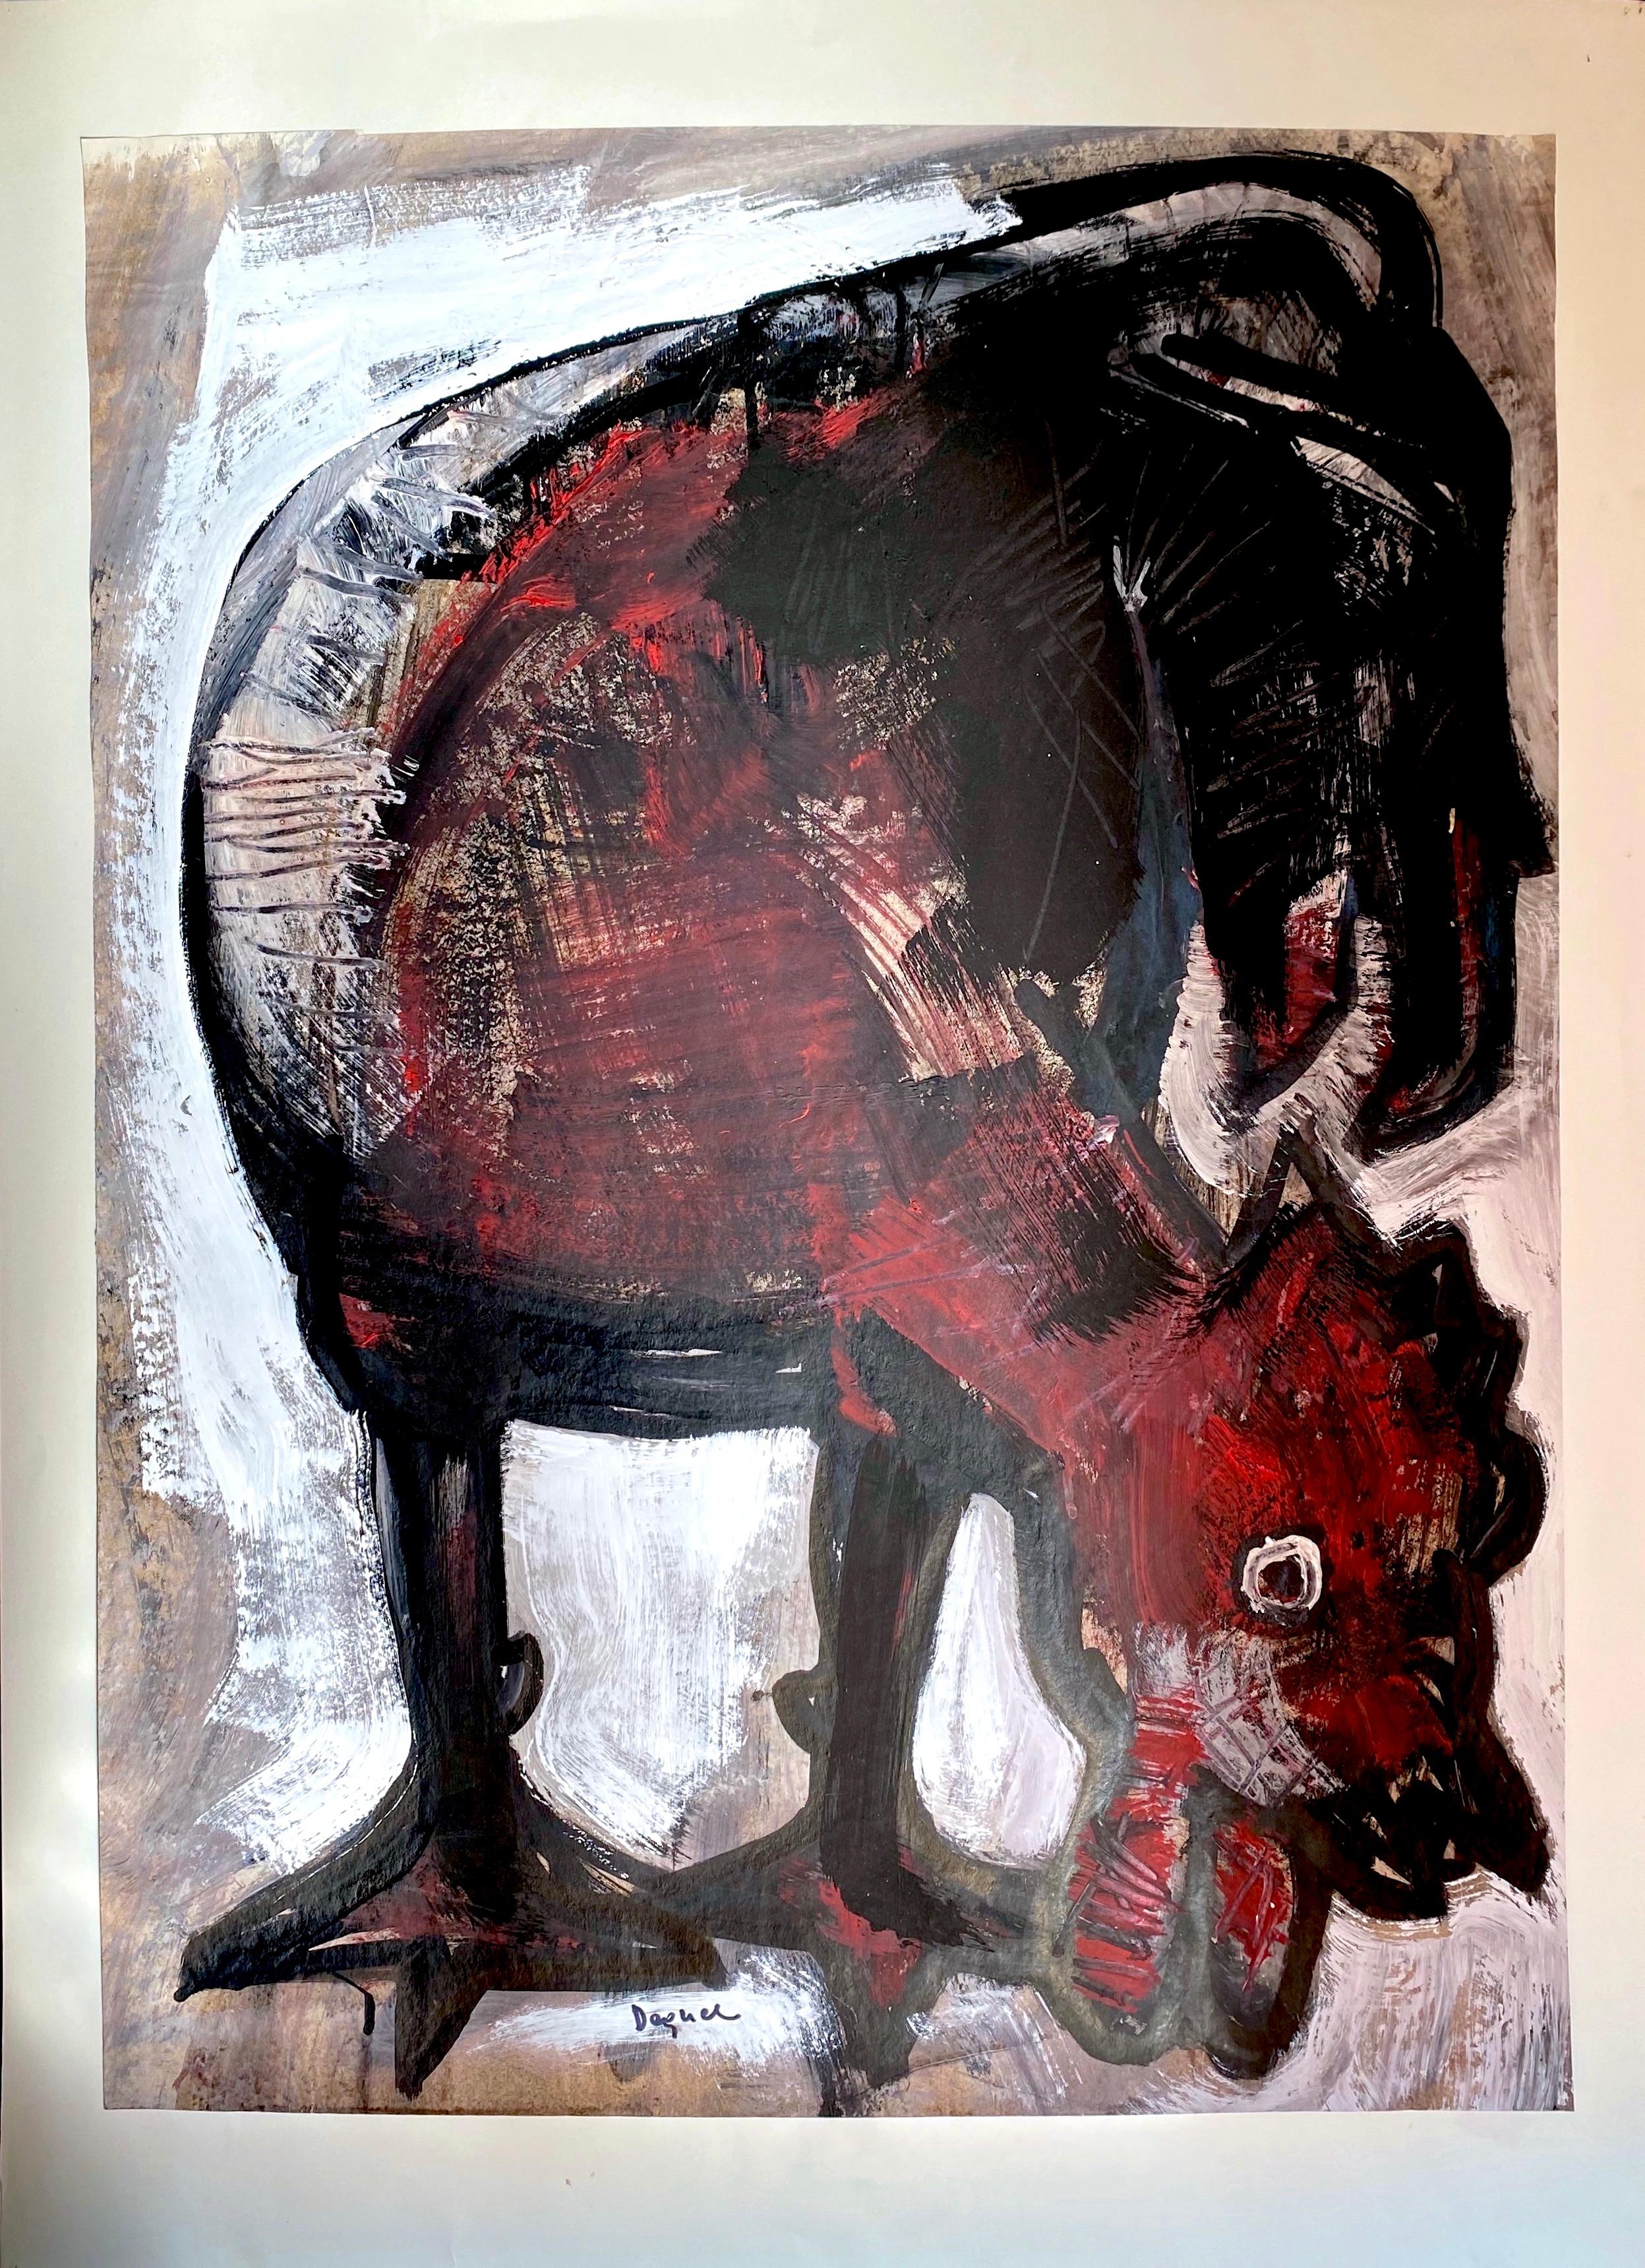 Ce coq marron et noir de l'artiste italien Oreste Dequel (1923-1989) a été peint de façon magistrale. Bien que son travail soit passé inaperçu, il s'agit d'une œuvre d'art étonnante représentant l'un des animaux les plus peints des 19e et 20e